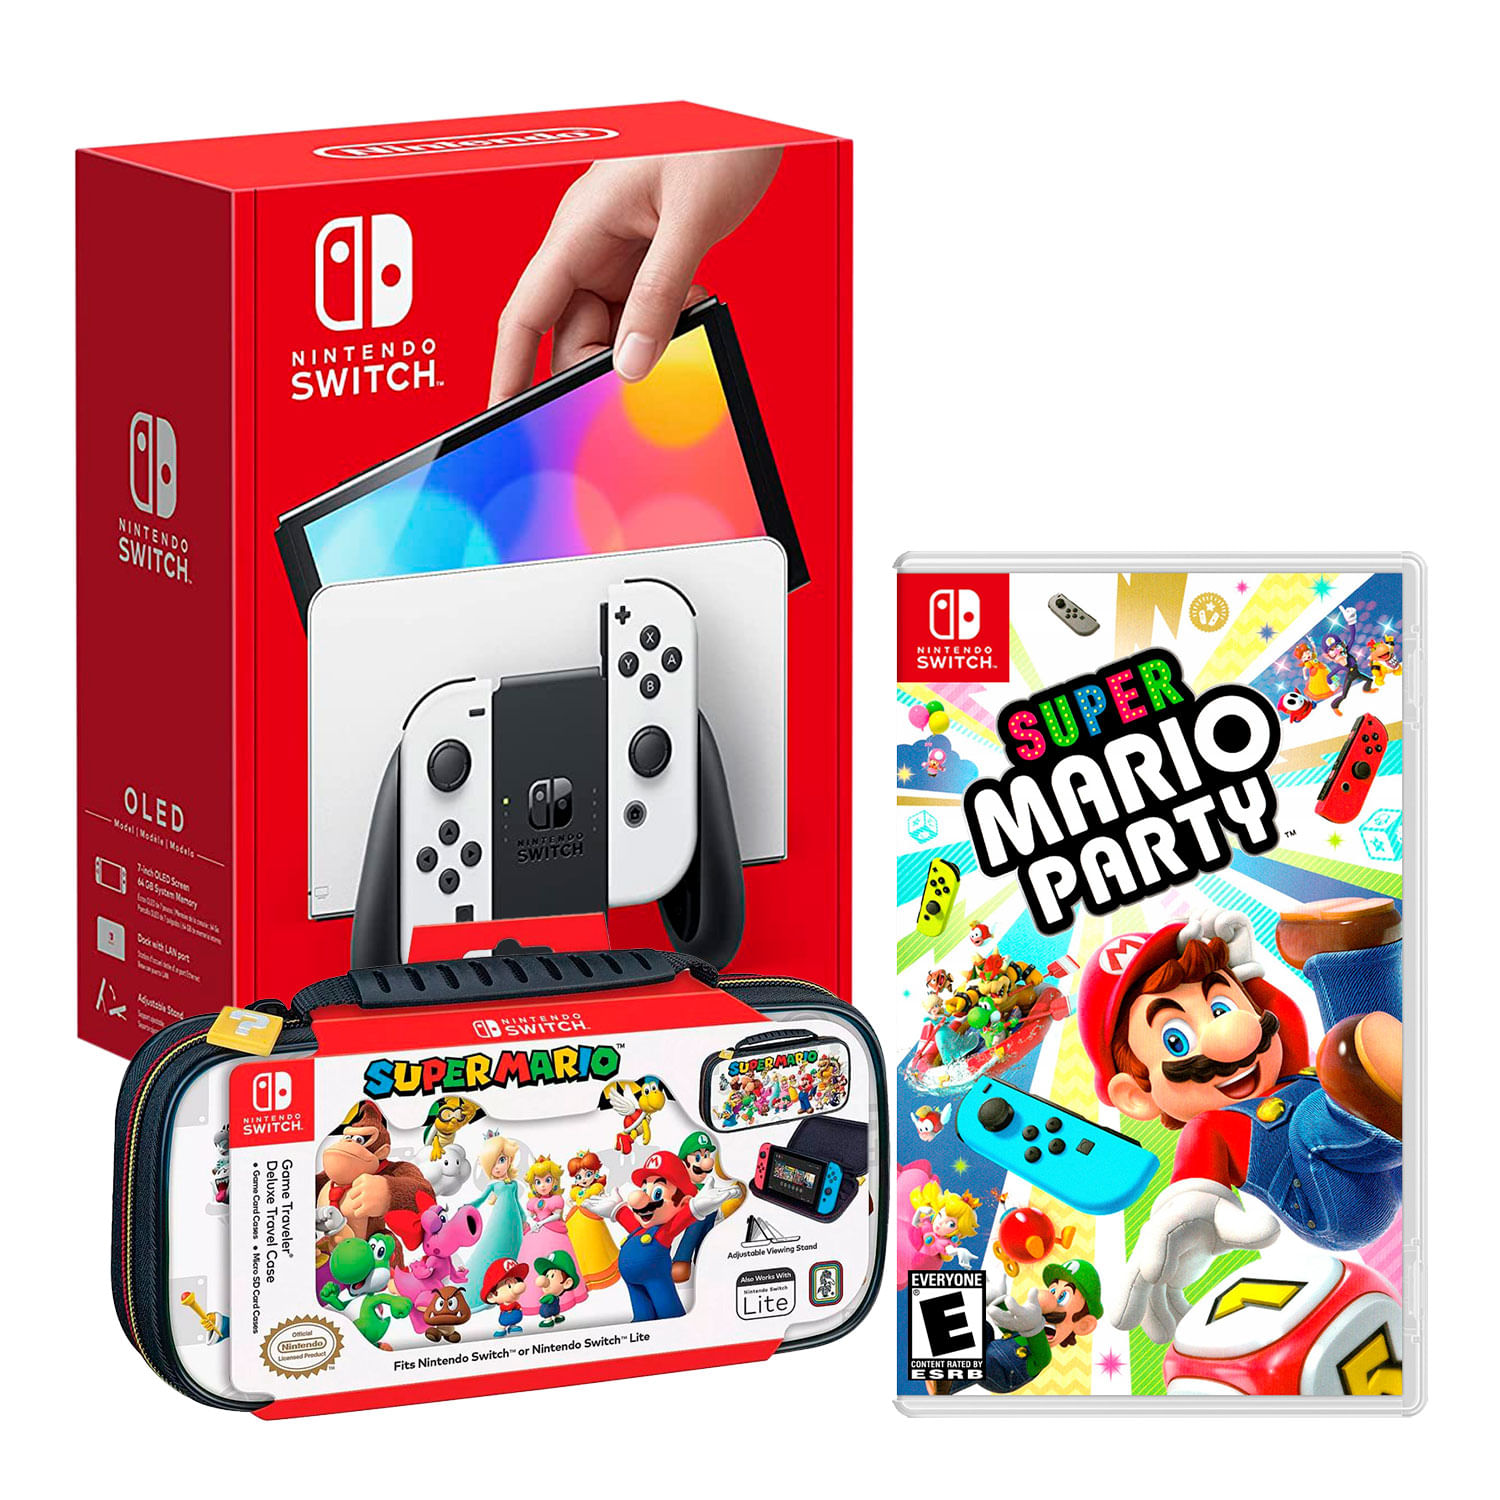 Consola Nintendo Switch Modelo Oled Blanco + Mario Party + Estuche Game Travel Deluxe Super Mario